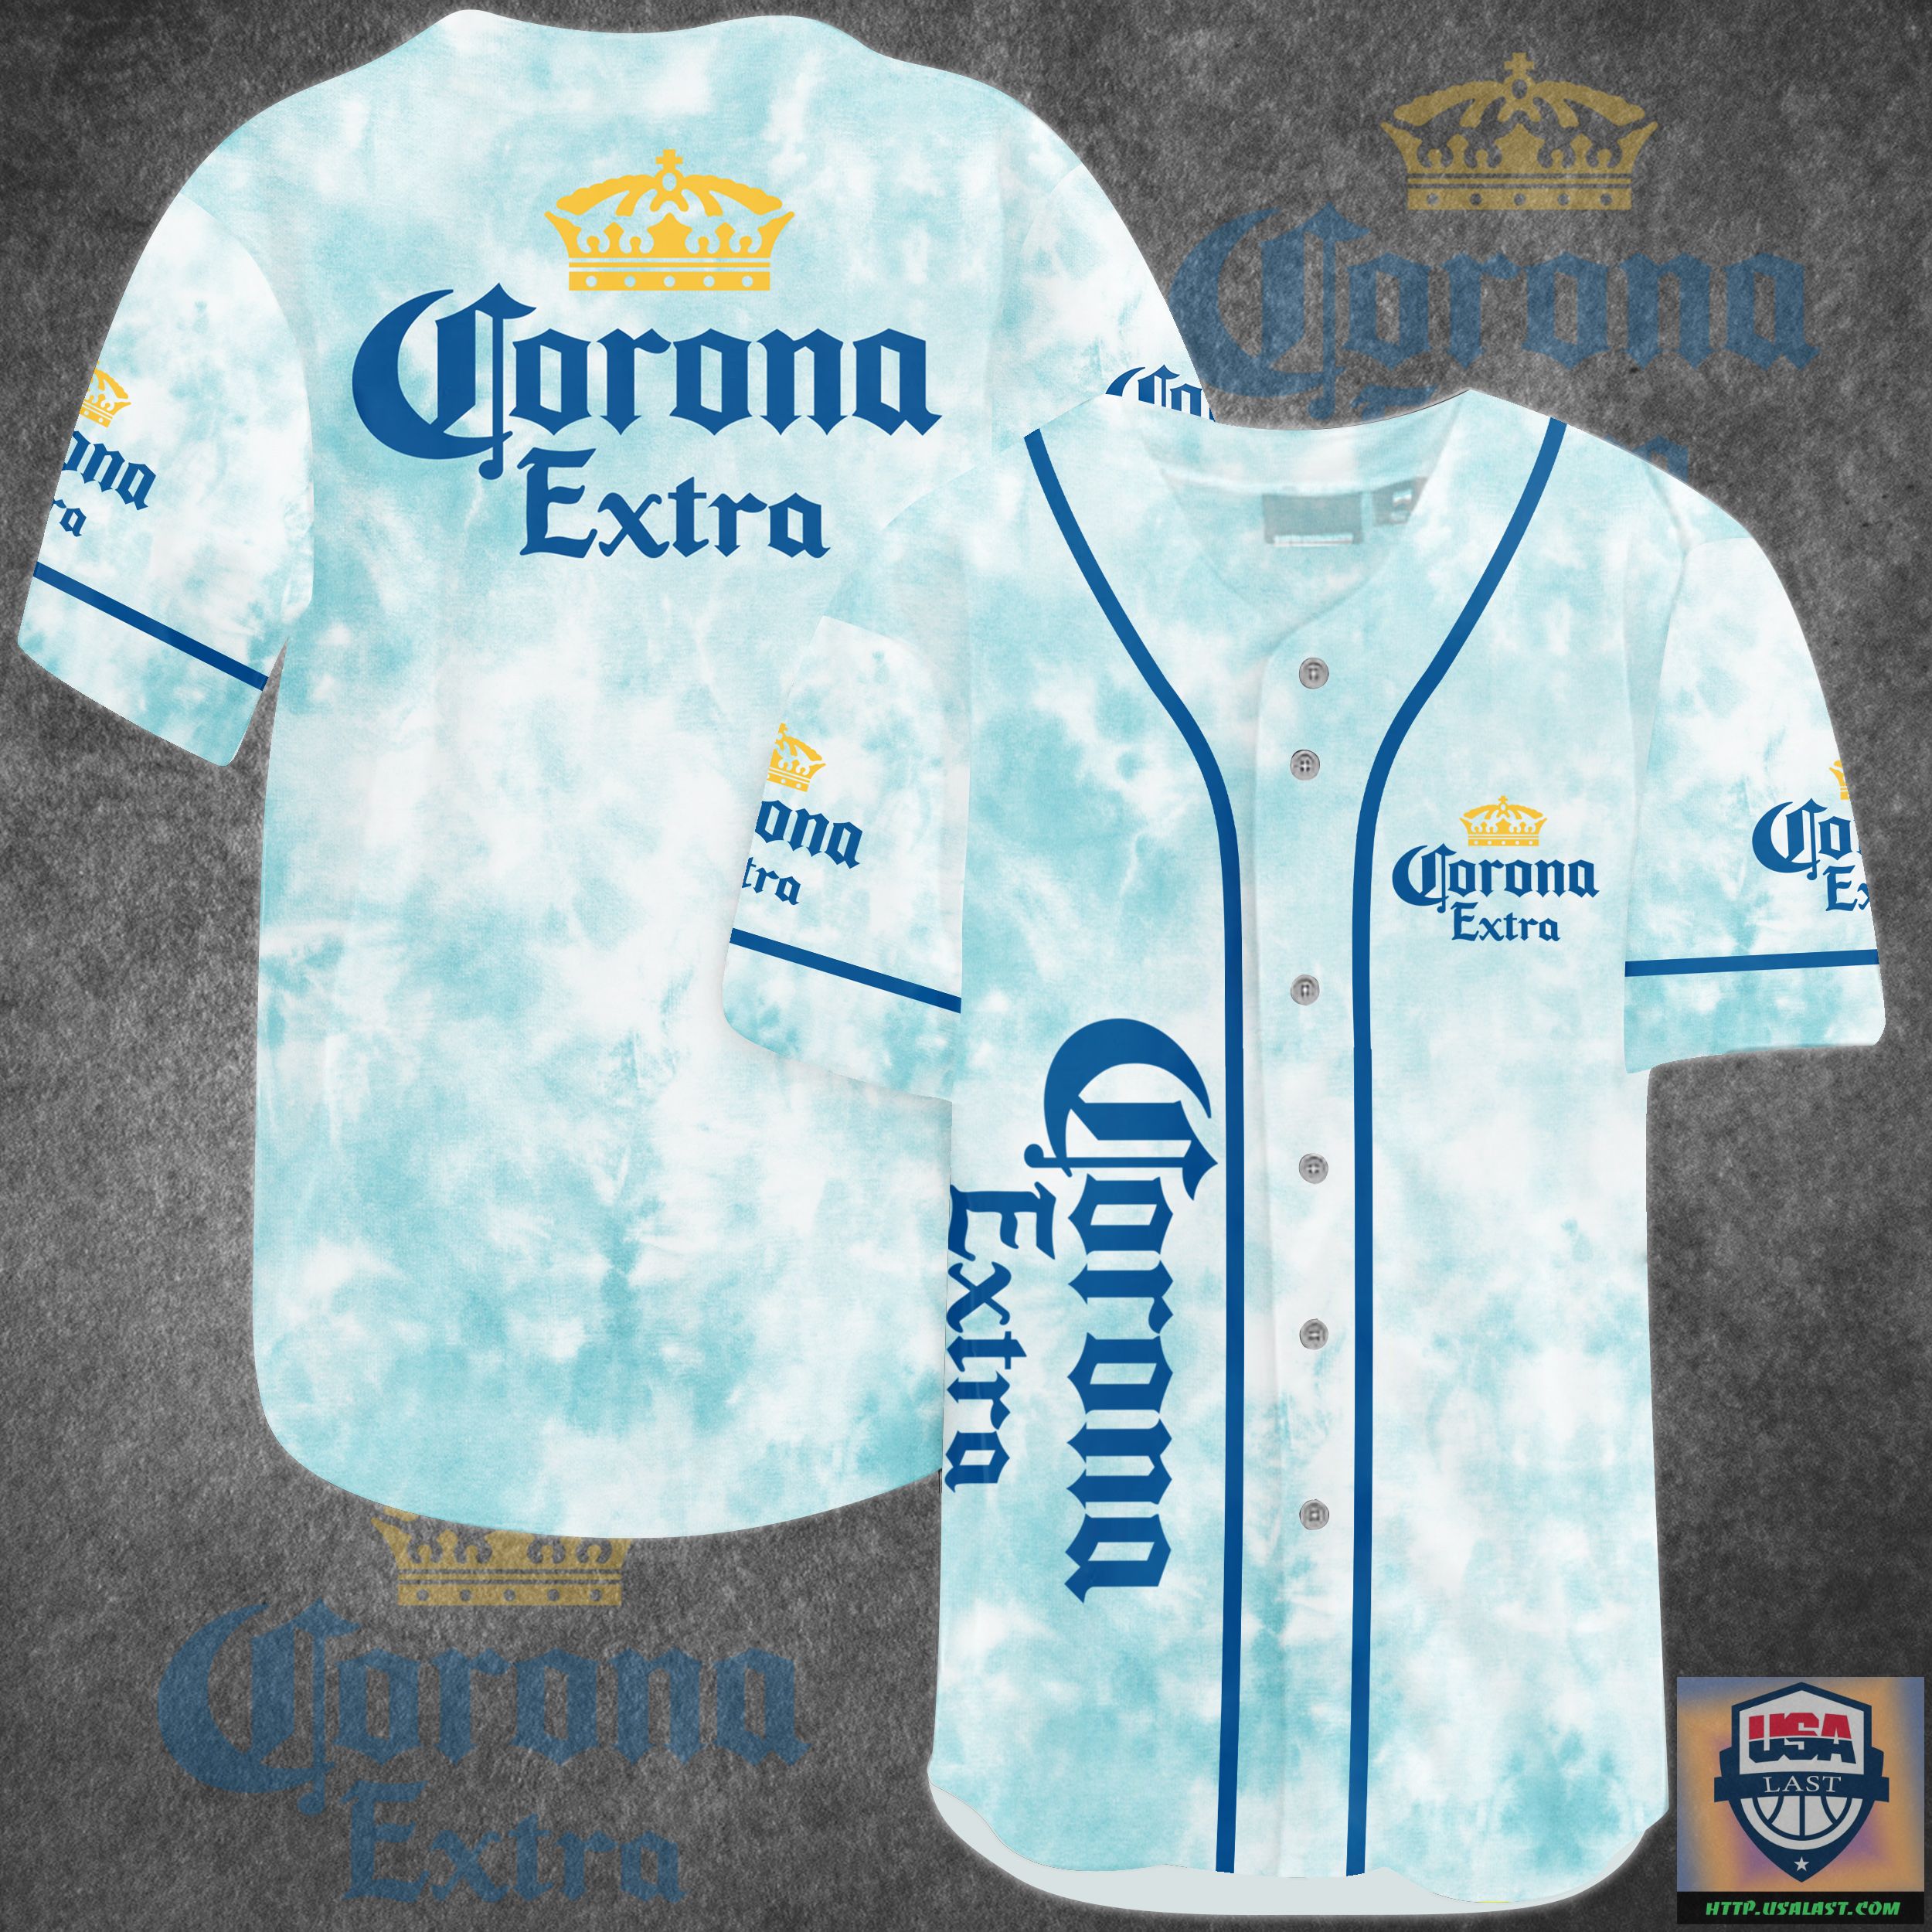 Corona Extra Tie Dye Baseball Jersey Shirt – Usalast